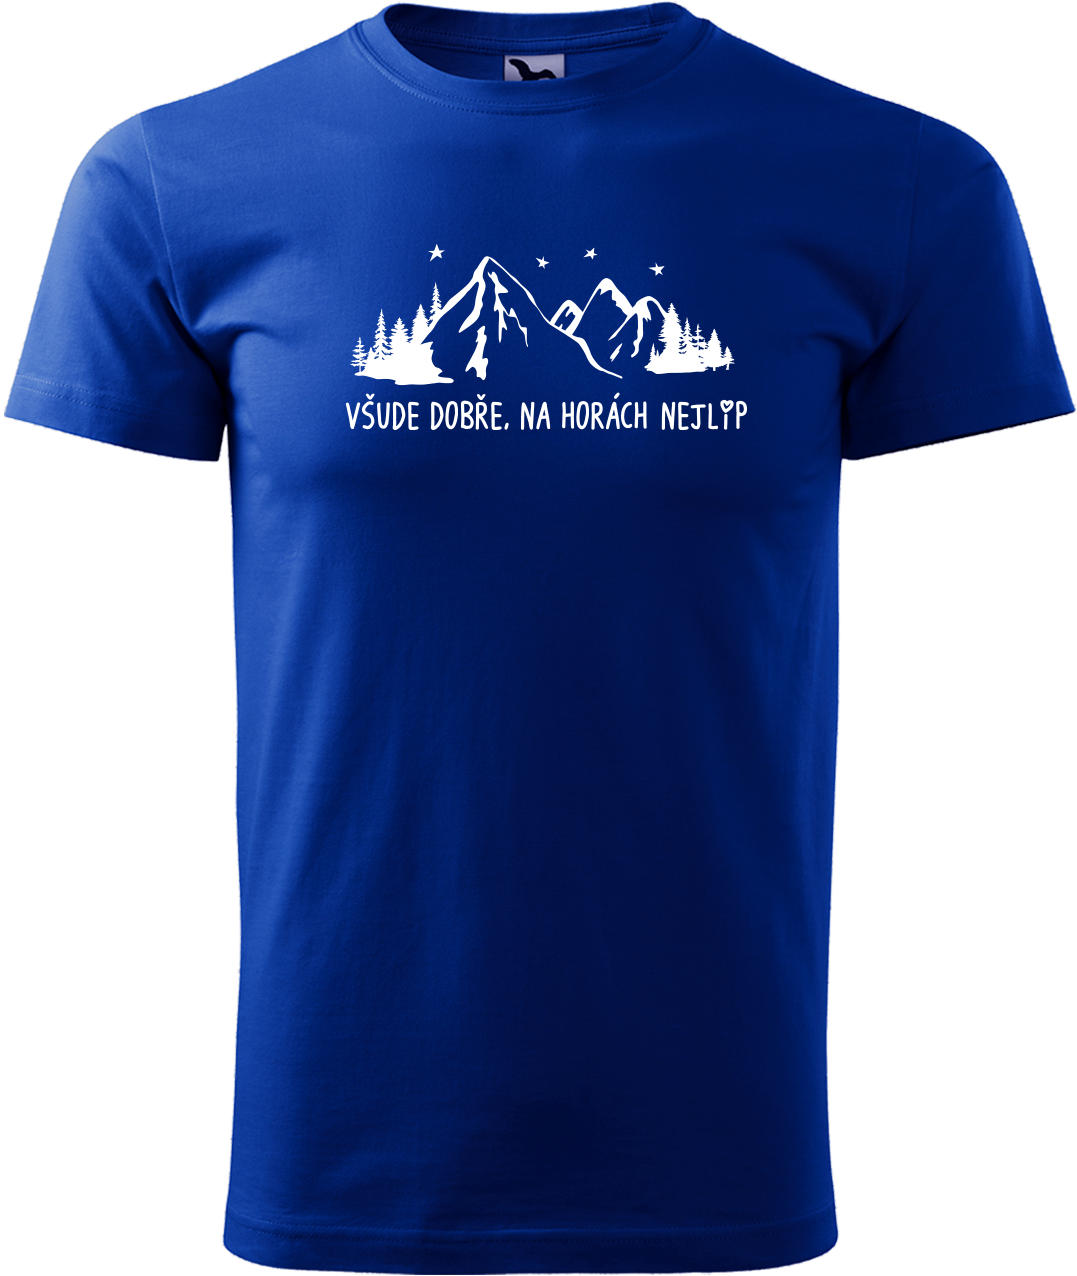 Pánské tričko na hory - Všude dobře, na horách nejlíp Velikost: M, Barva: Královská modrá (05)